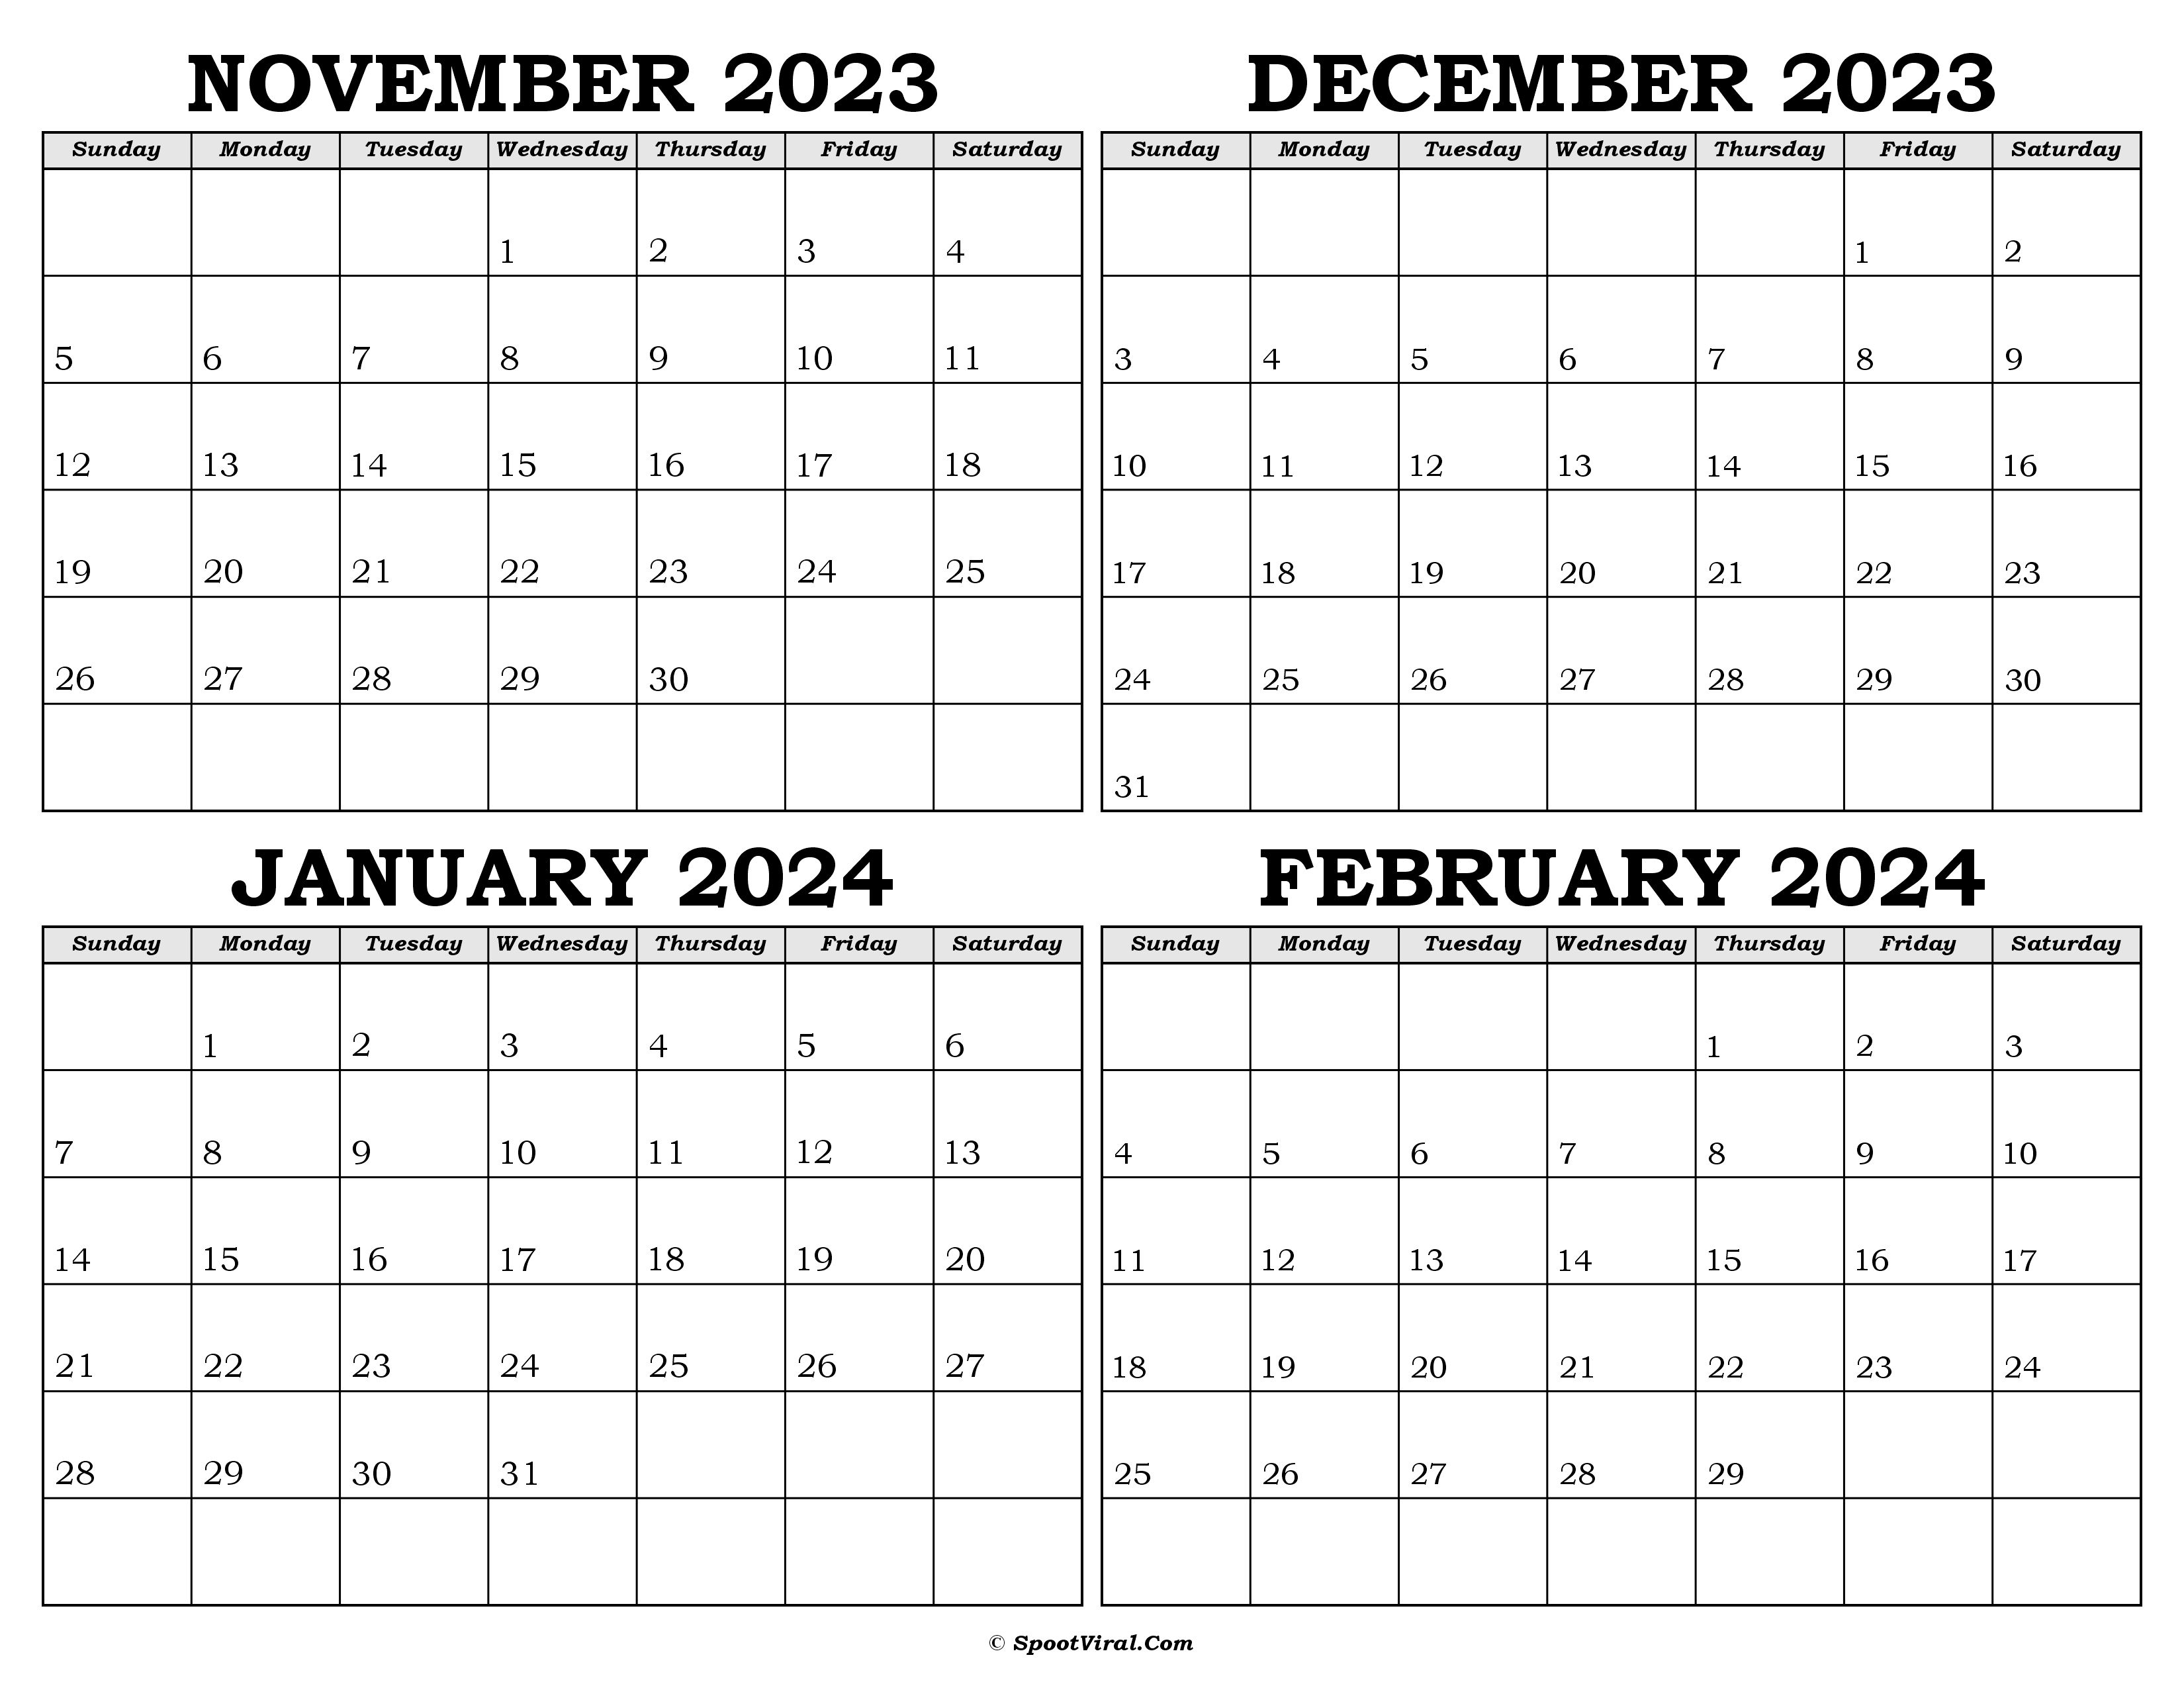 Calendar November 2023 to February 2024